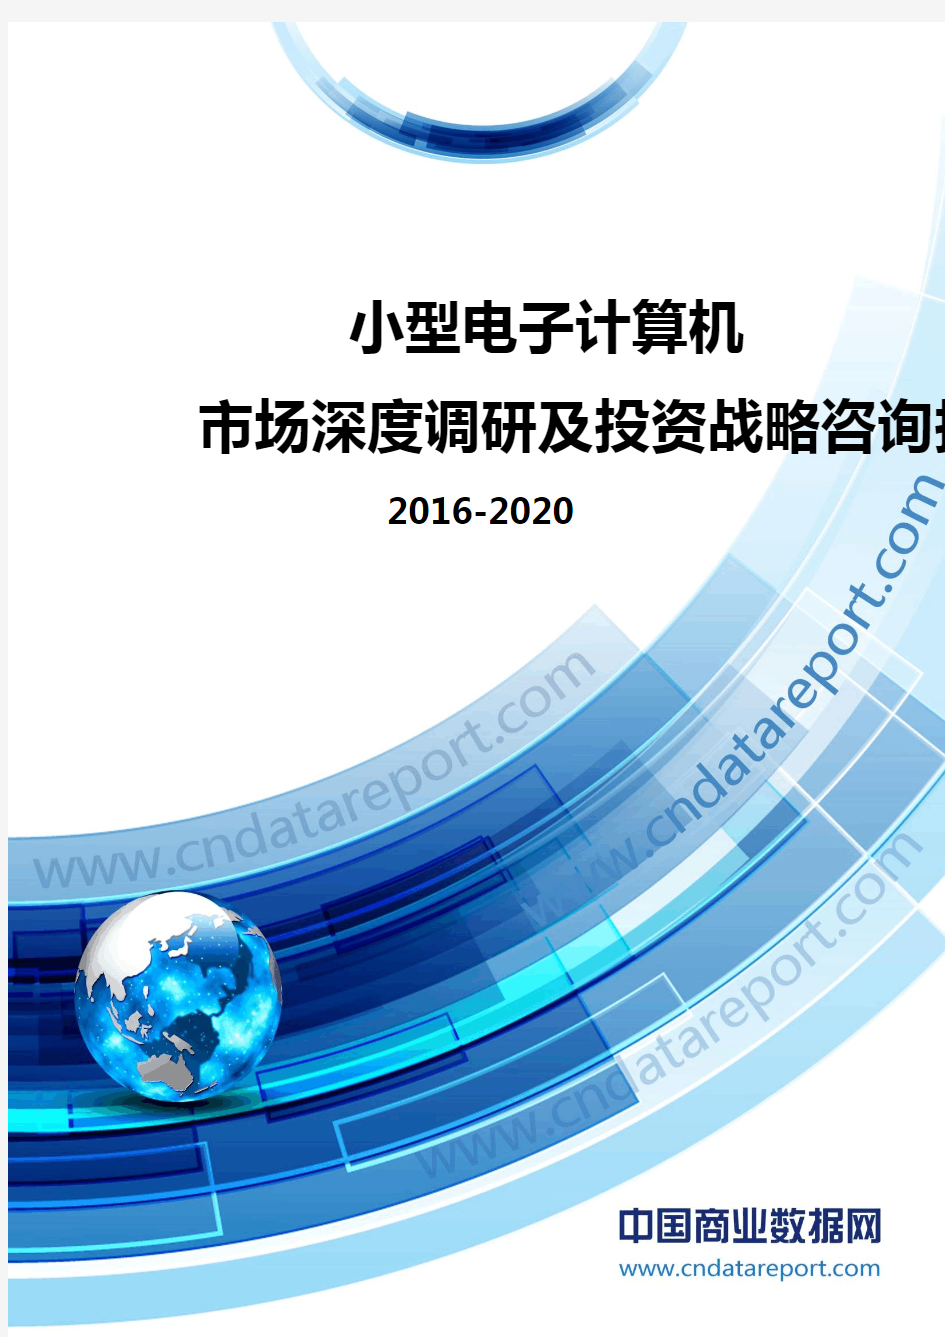 2016-2020年小型电子计算机市场深度调研及投资战略咨询报告